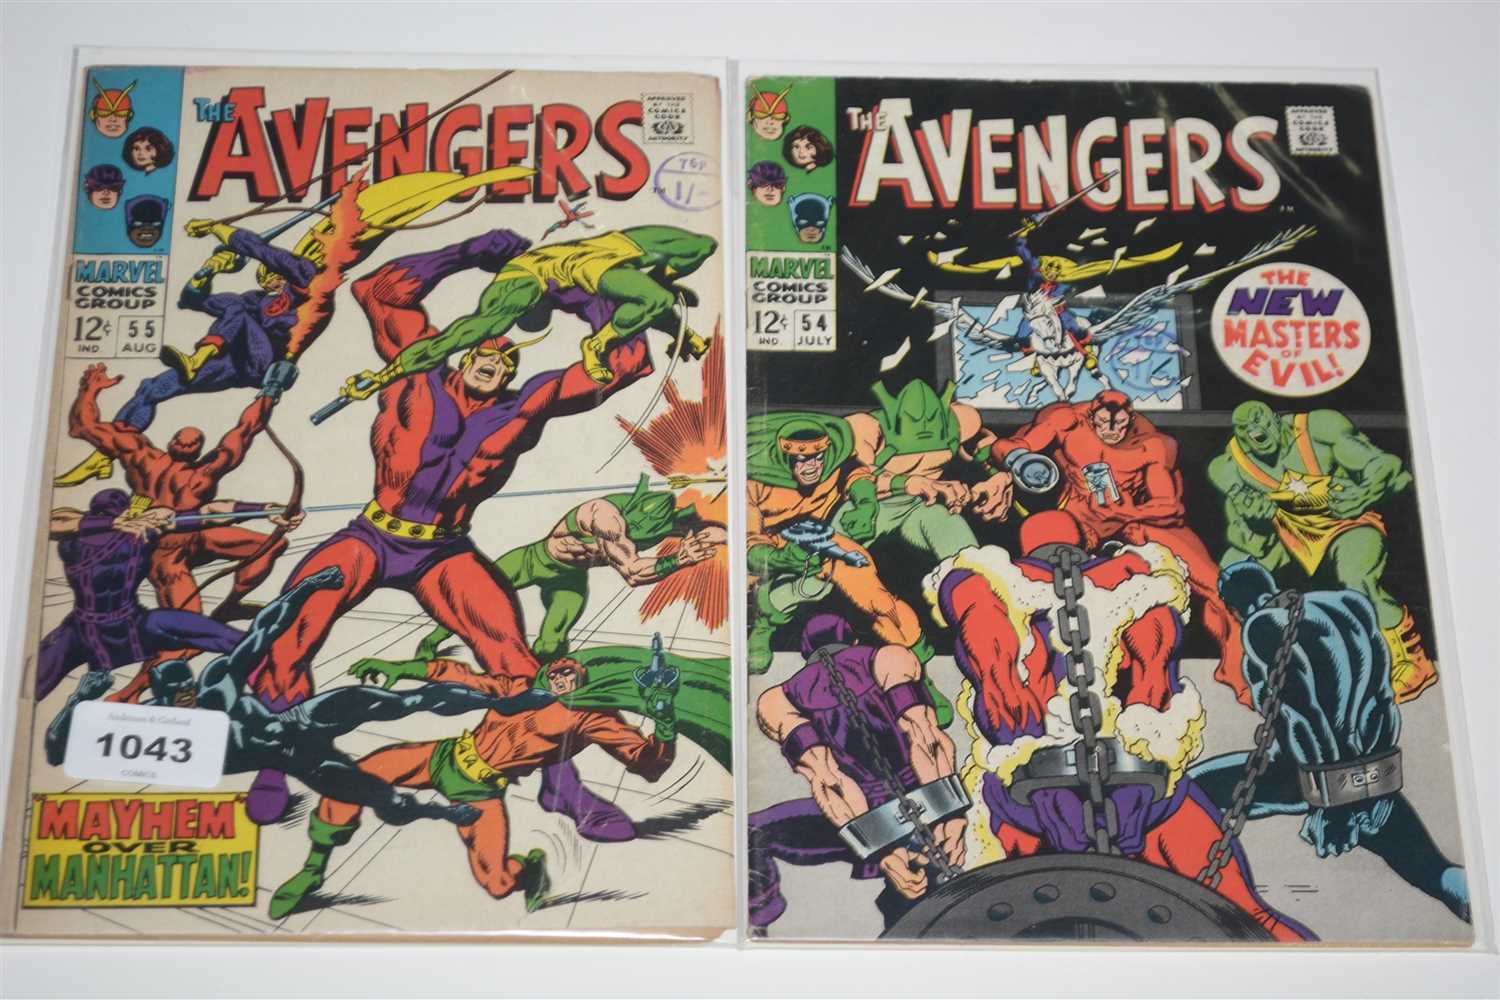 Lot 1043 - The Avengers Comics